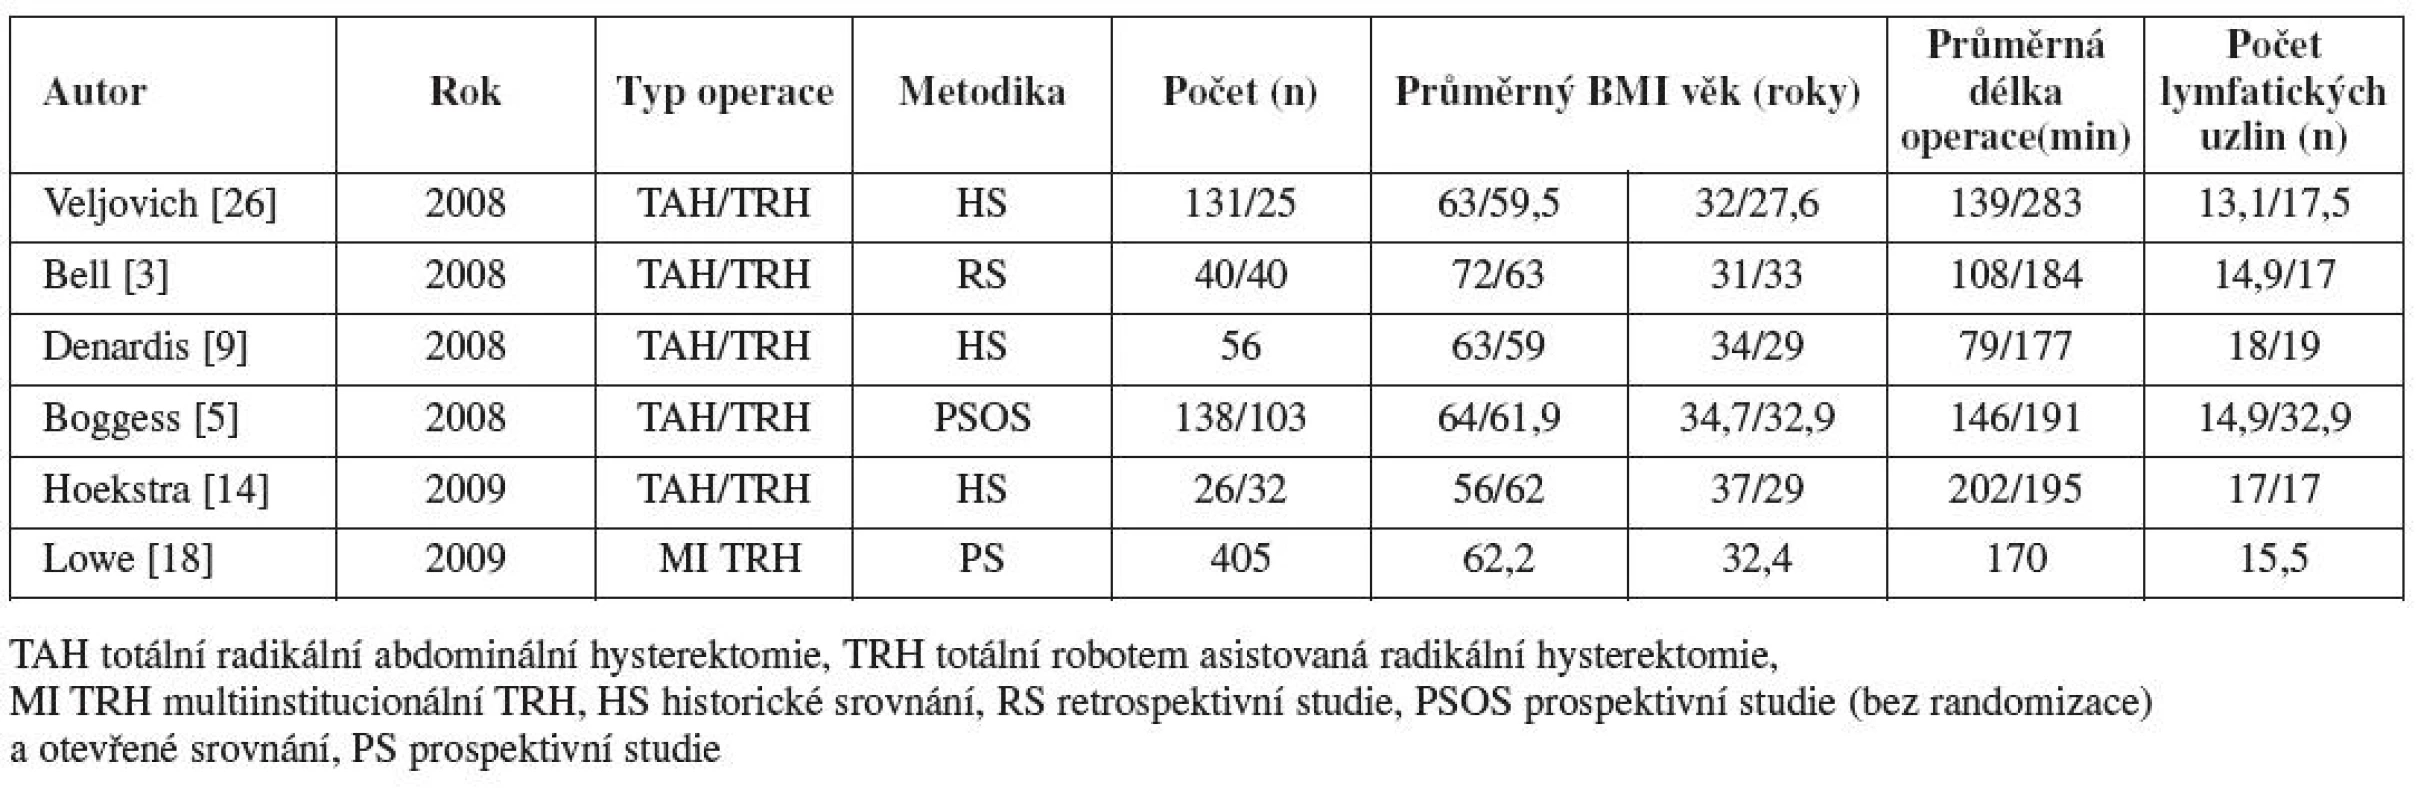 Přehled literatury: Studie roboticky asistované hysterektomie u karcinomu endometria:
Charakteristika, délka operace, získané lymfatické uzliny